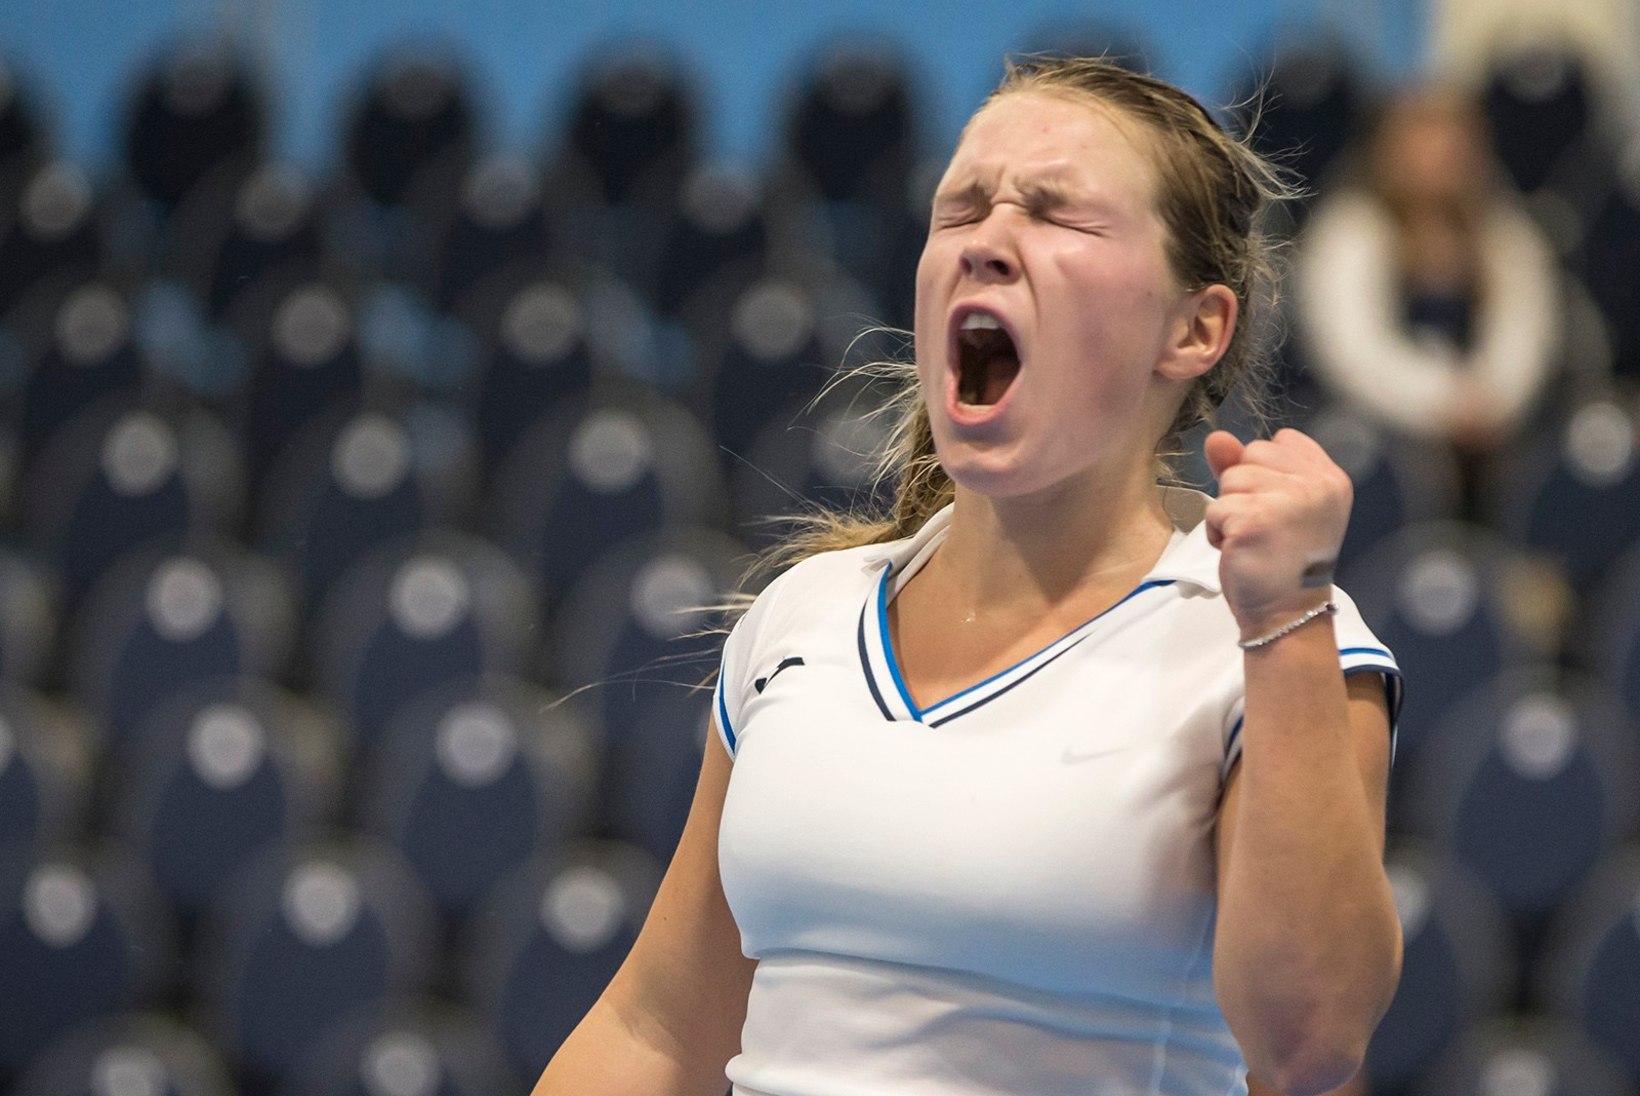 16aastane Eesti tennisepiiga jõudis Makedoonias finaali